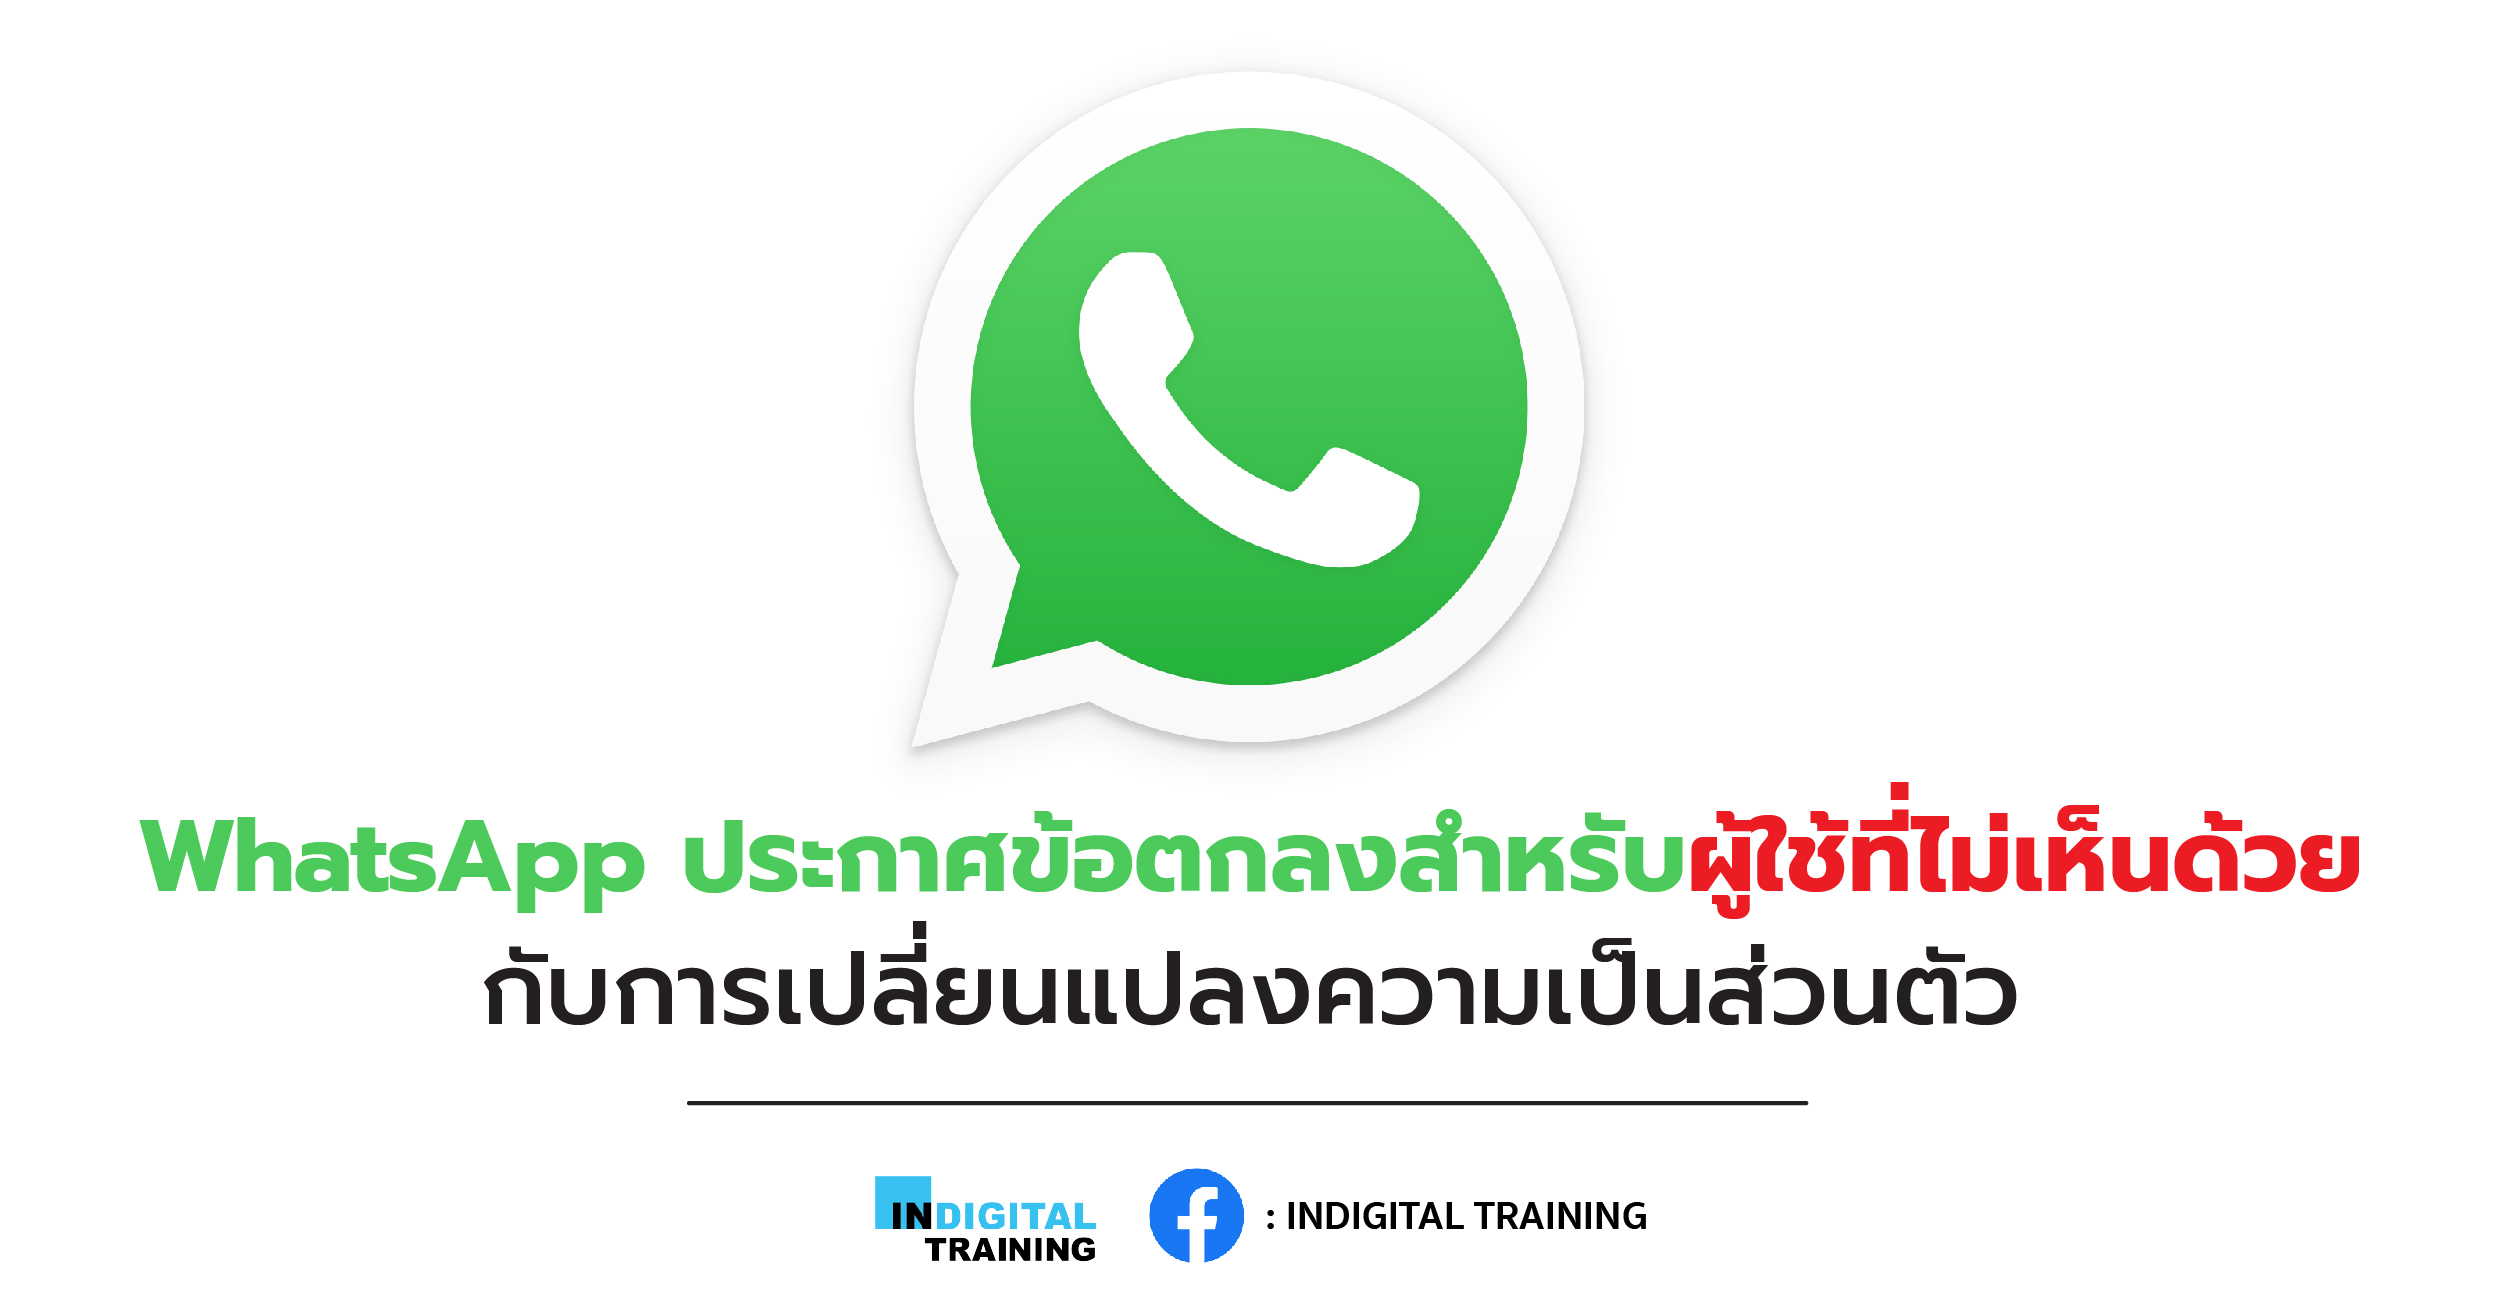 WhatsApp ประกาศข้อตกลงสำหรับผู้ใช้ที่ไม่เห็นด้วยกับการเปลี่ยนแปลงความเป็นส่วนตัว